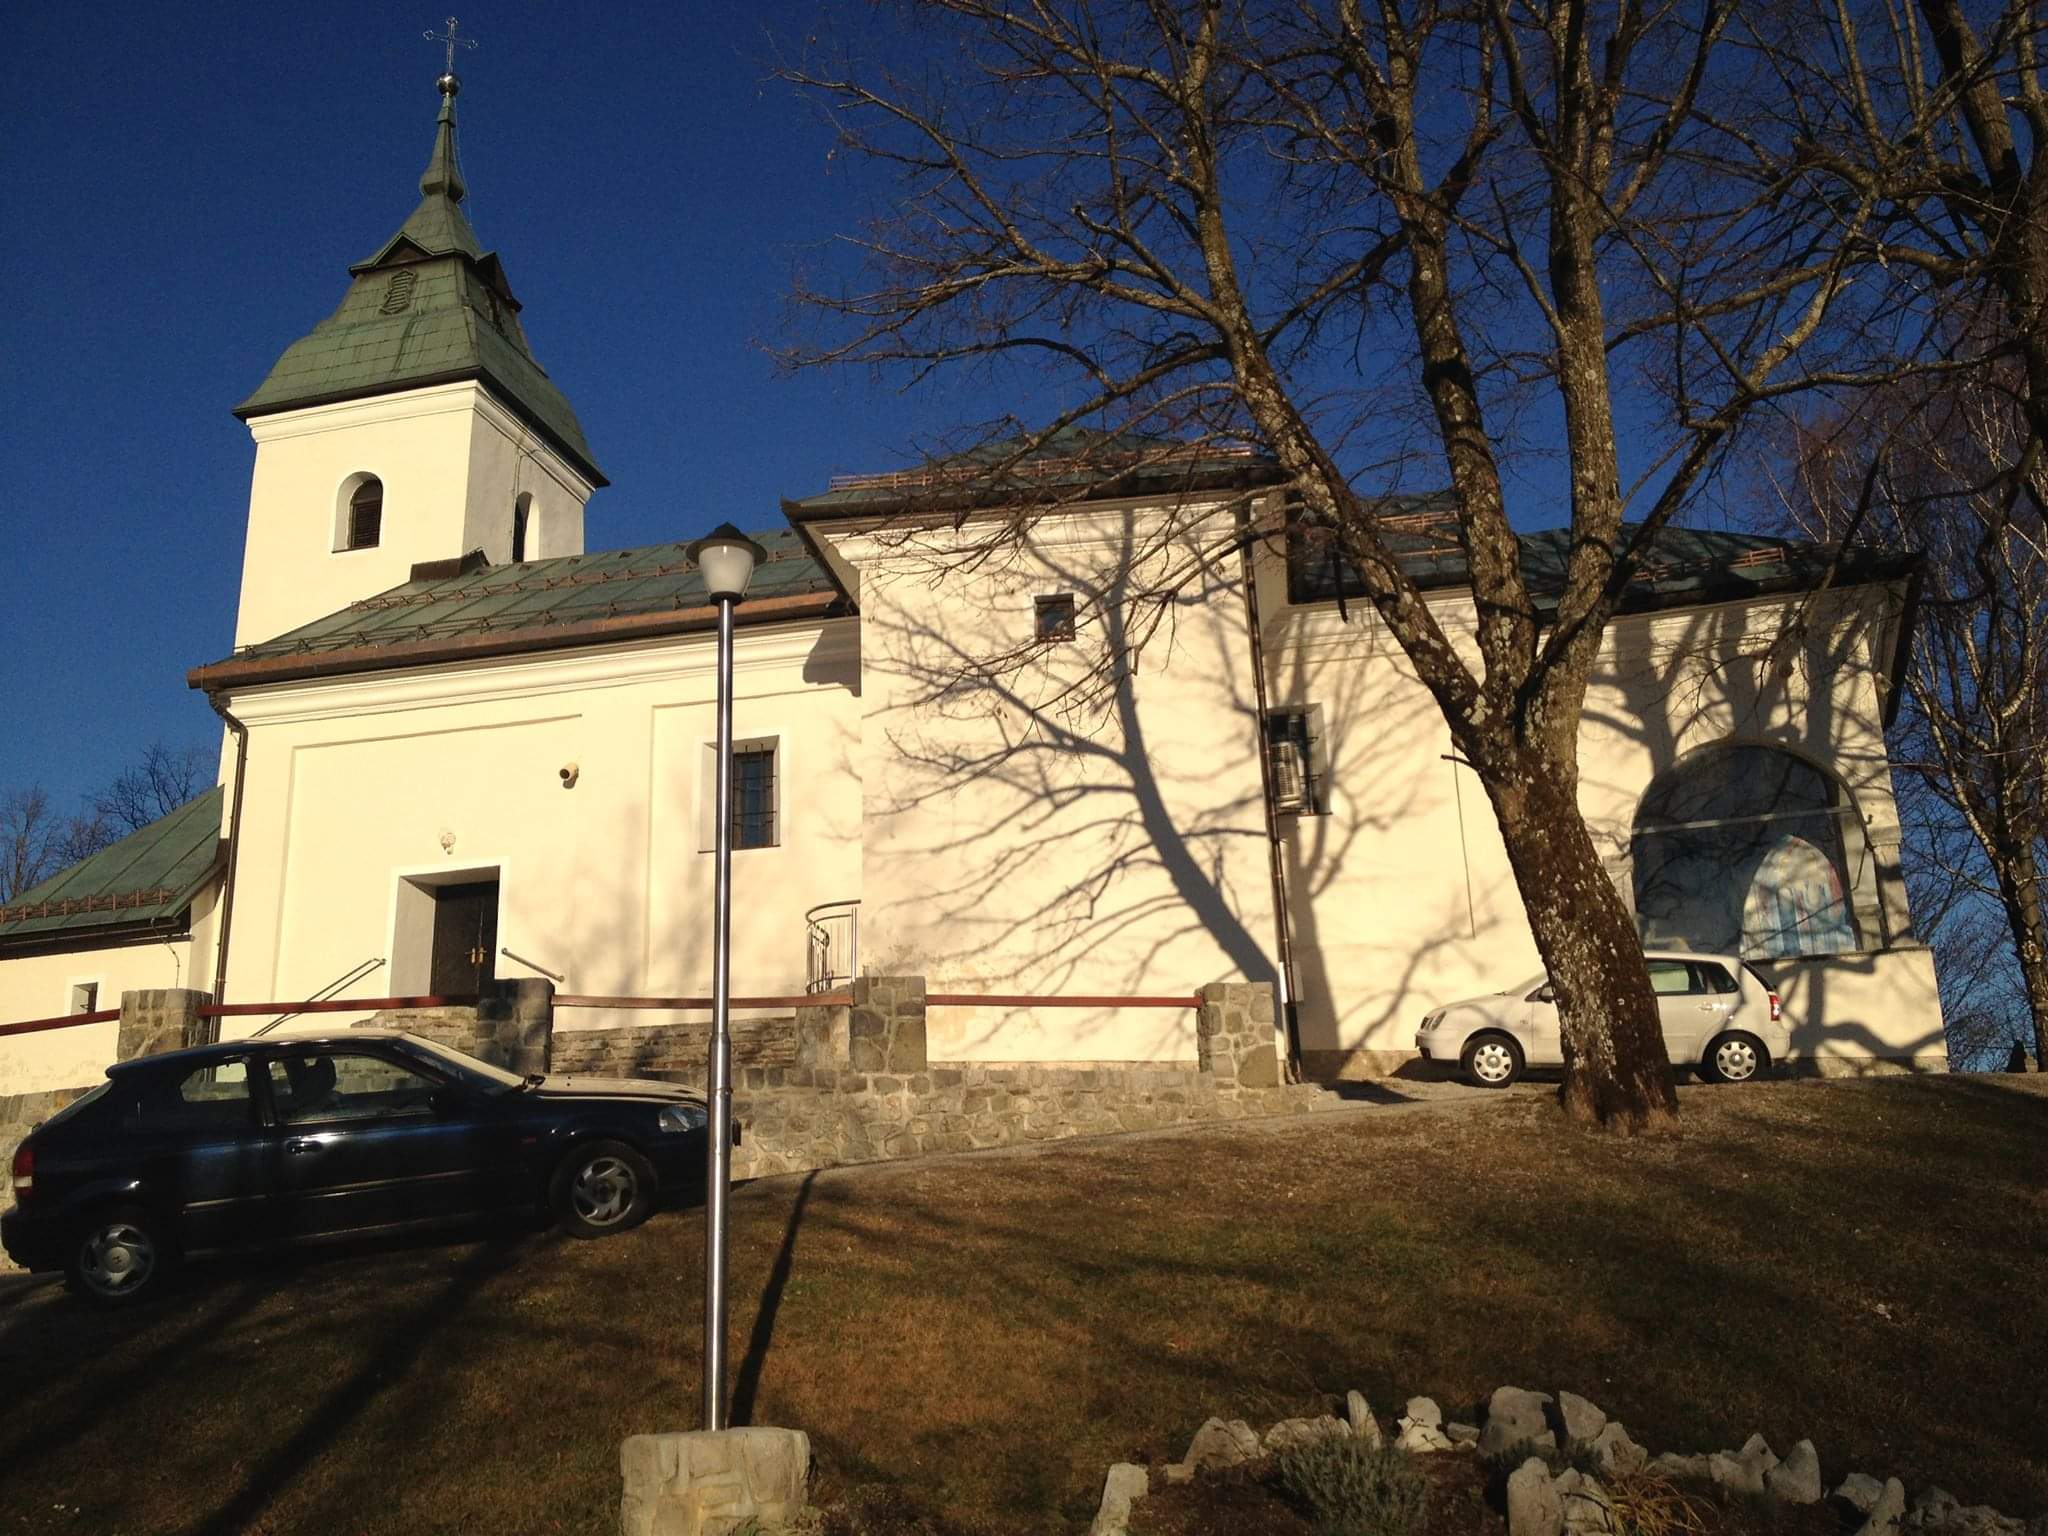 La Reina de la Paz de Medjugorje se aparece en Eslovenia [con mensajes tremendos sobre la Iglesia]